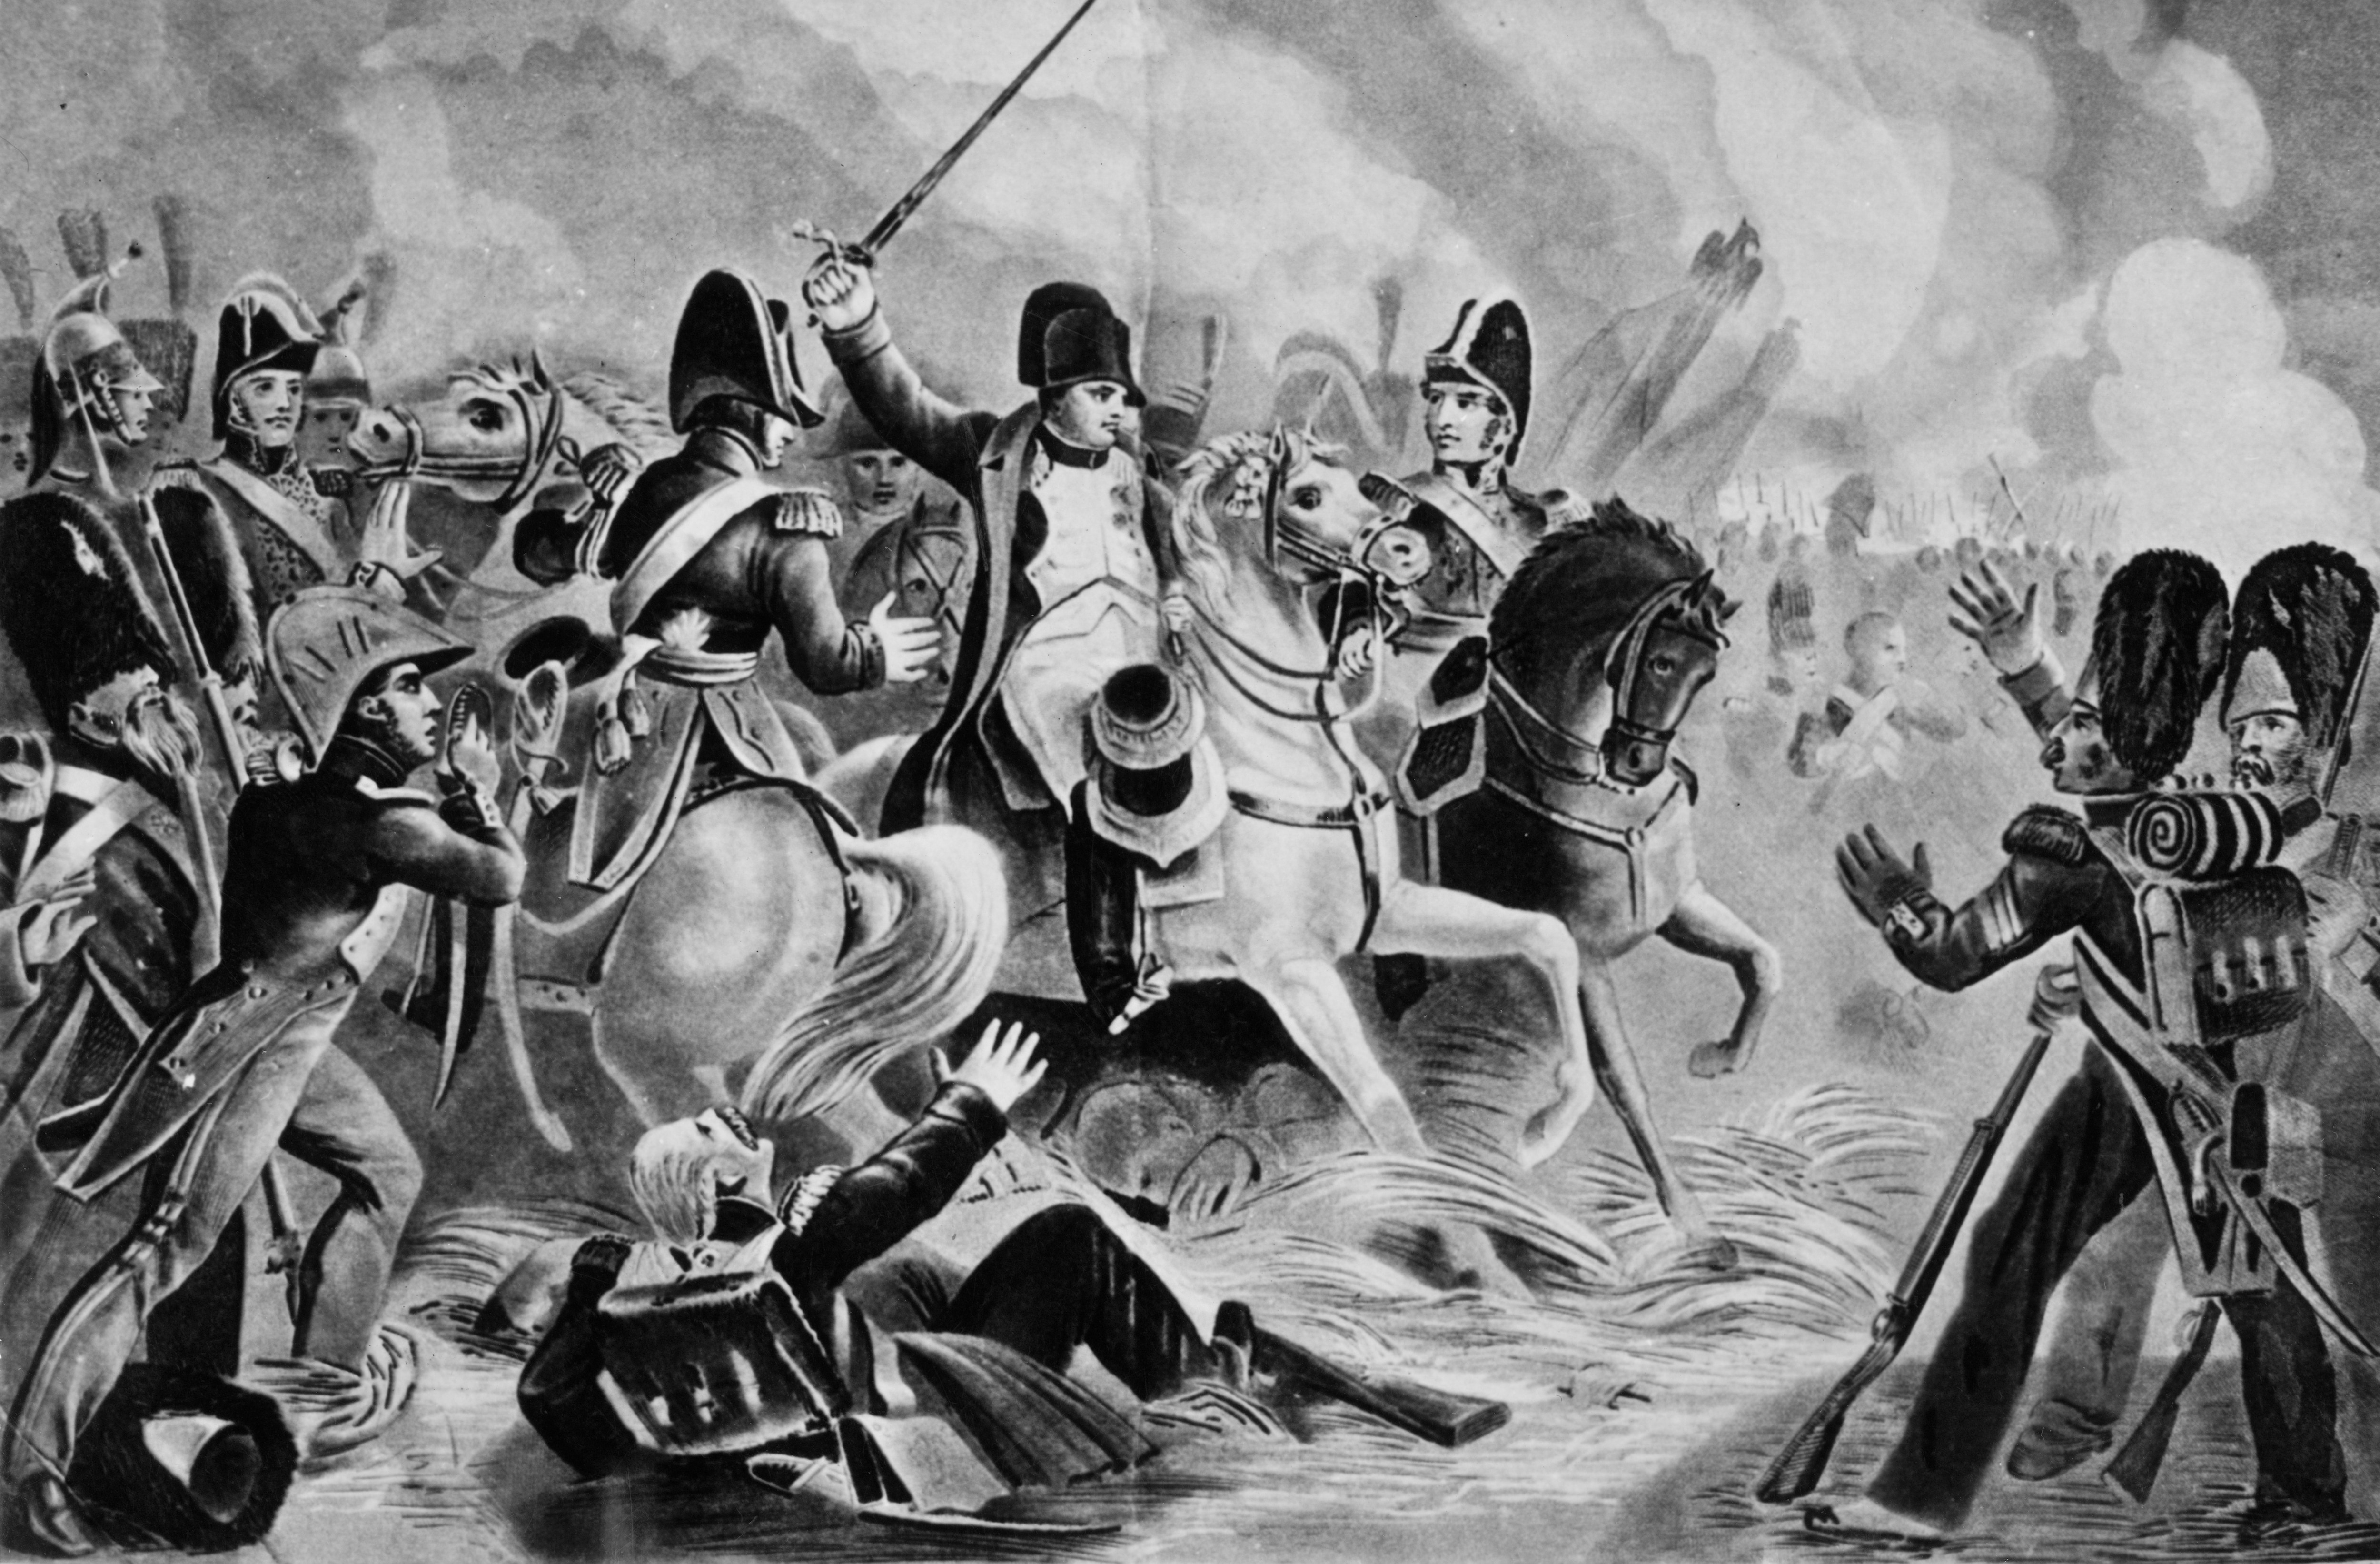 La battaglia di Waterloo del 18 giugno 1815, l’ultima decisiva combattuta dall’esercito francese contro una coalizione antinapoleonica. Dopo la sconfitta Napoleone viene condotto sull’isola atlantica di Sant’Elena, dove morirà il 5 maggio 1821